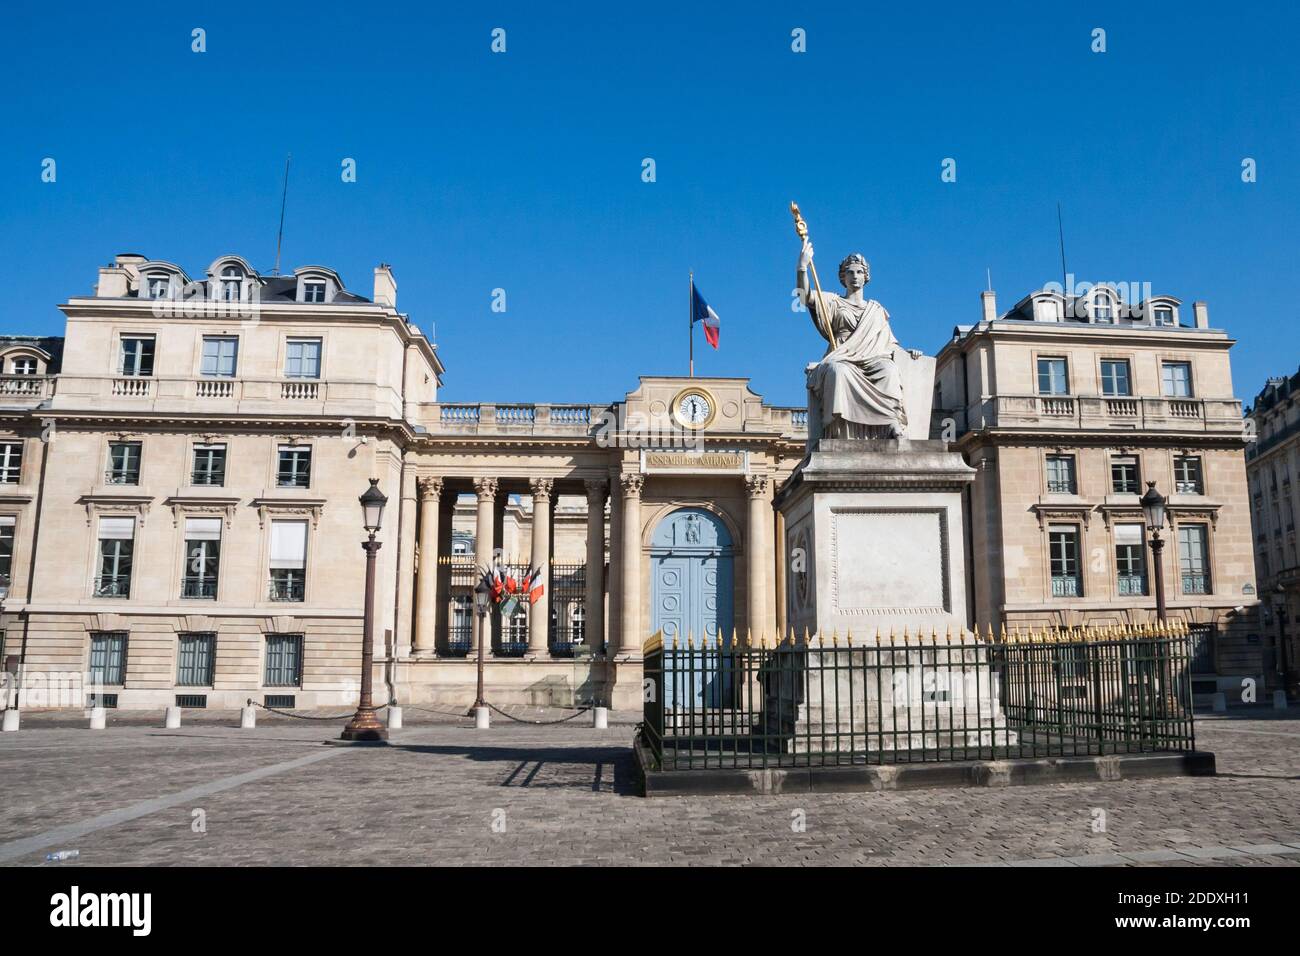 Französische Nationalversammlung oder Palais Bourbon (Bourbon Palast) Hintereingang in der Rue de l'Universite (Universitätsstraße) mit Rechtsstatue in Paris, Frankreich. Stockfoto